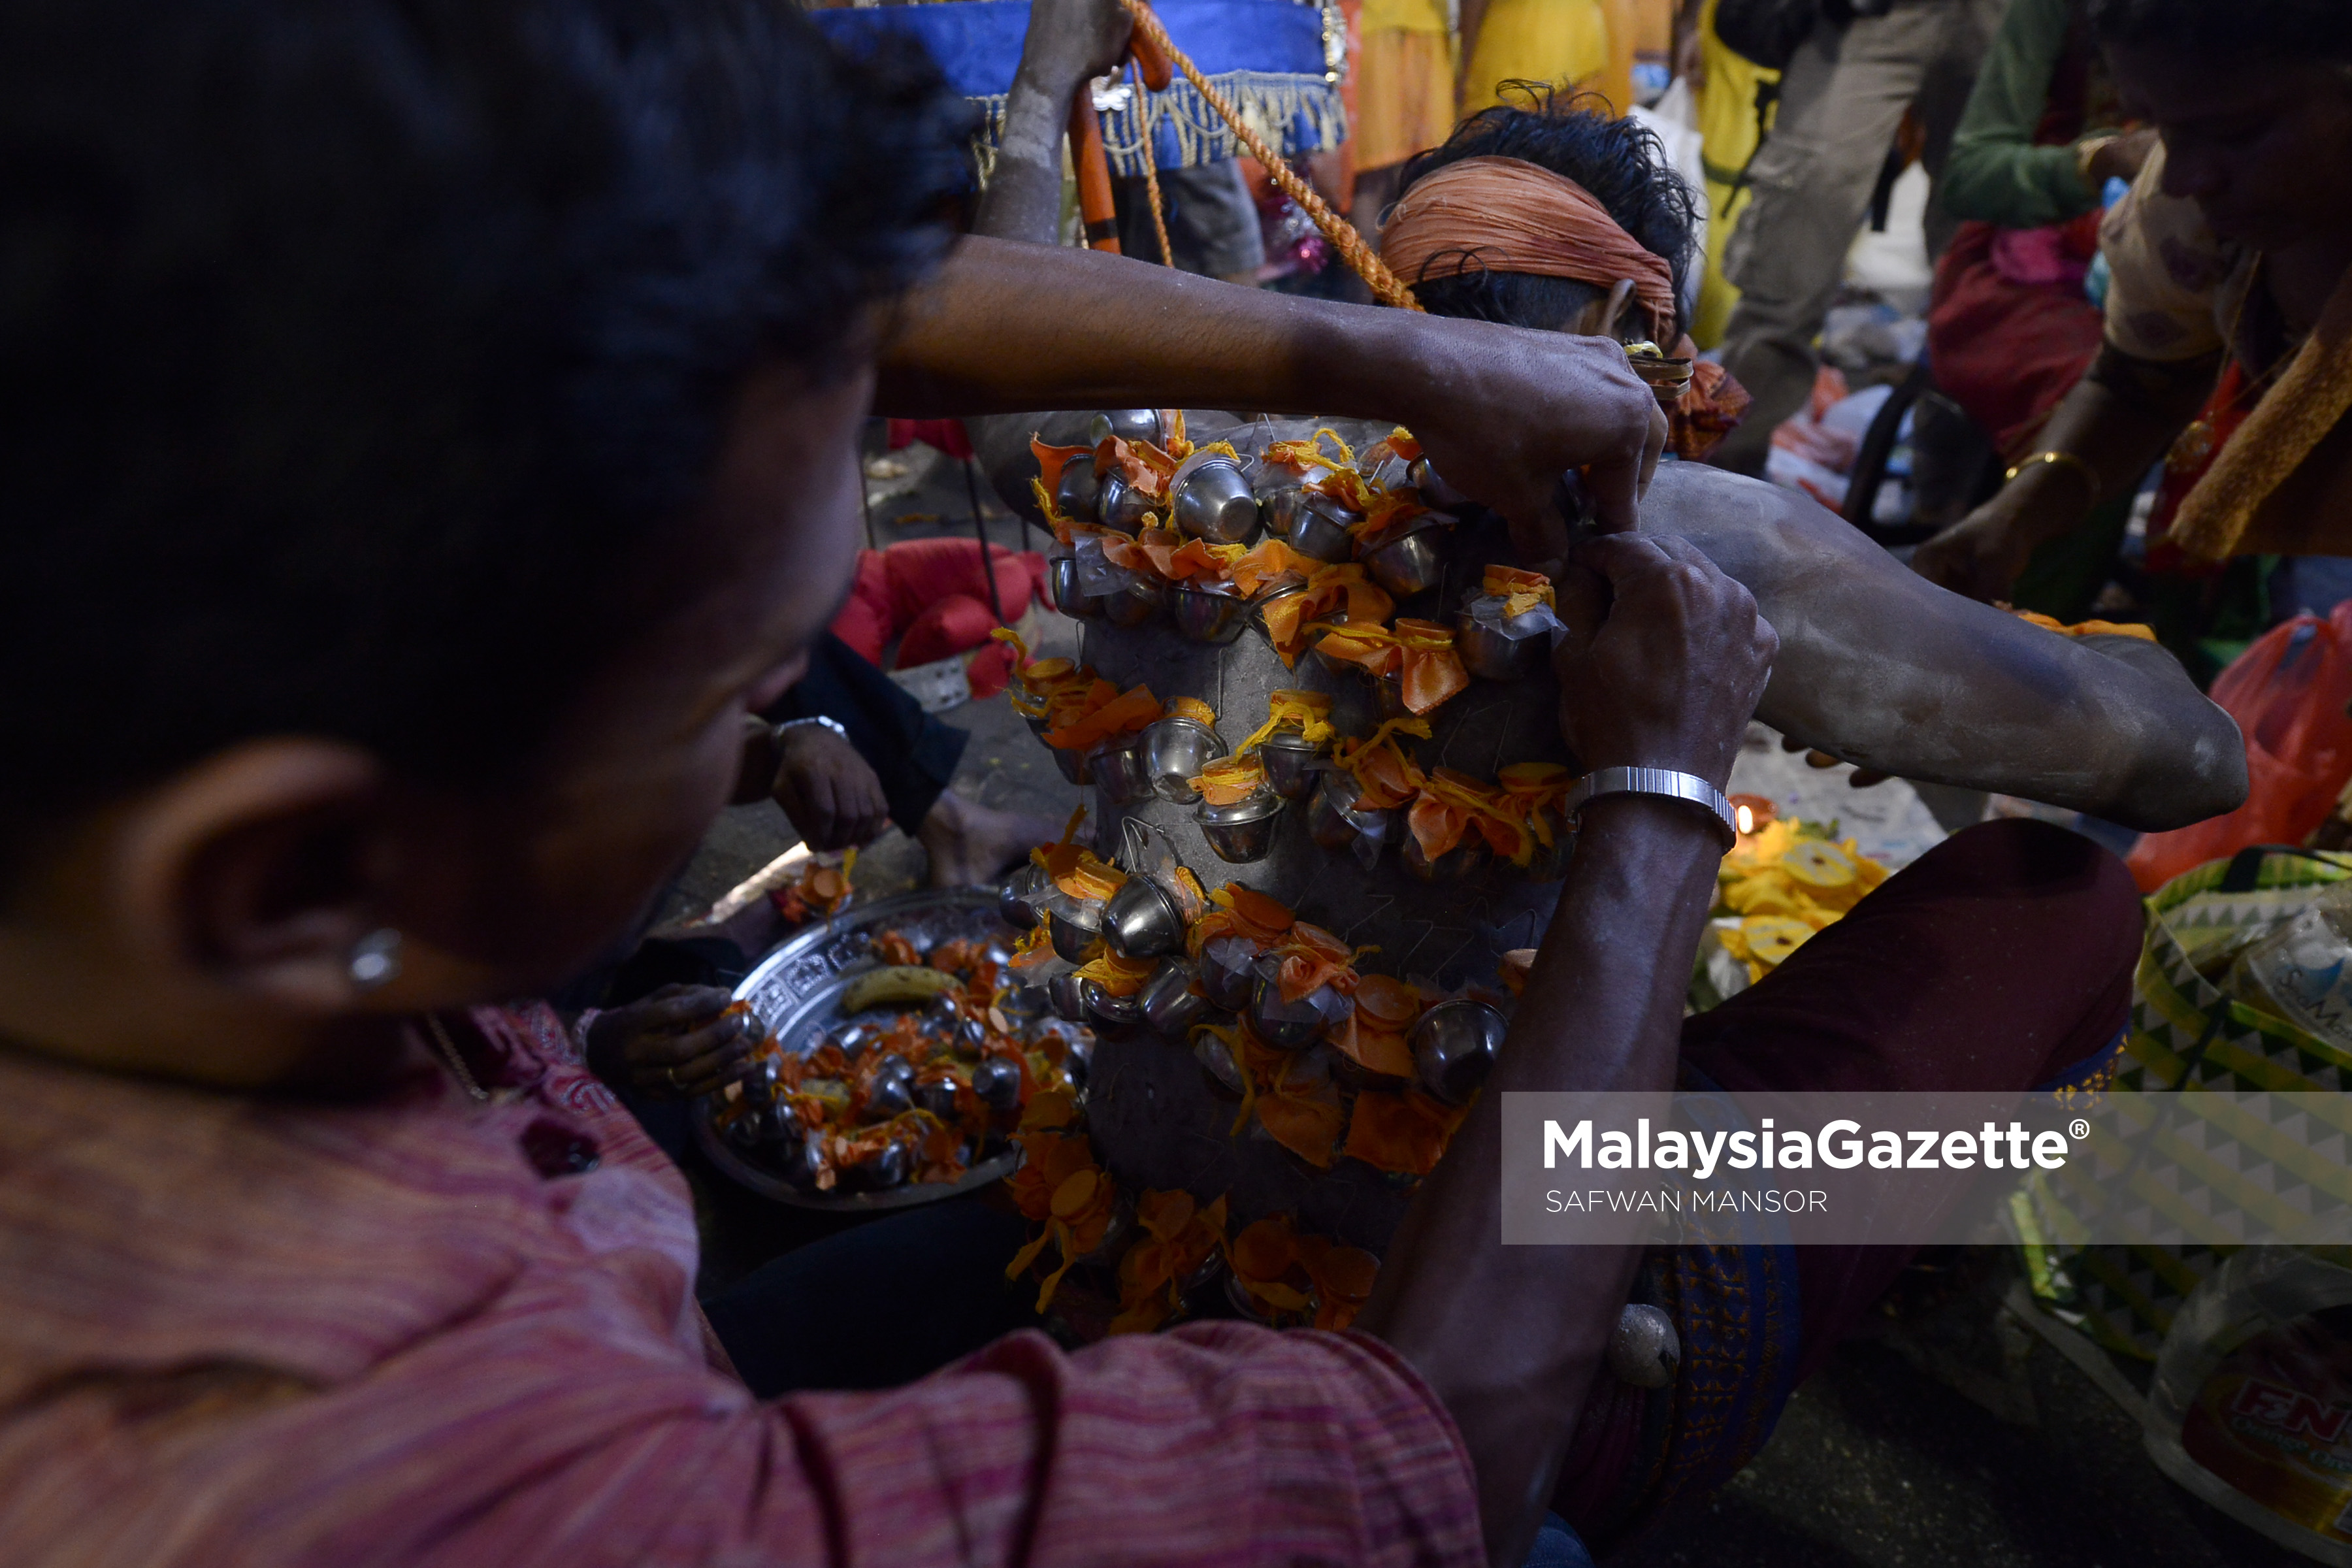 Seorang penganut agama Hindu membantu rakannya memakaikan Kavadi yang dicucuk pada badannya sebelum melakukan ritual keagamaan sempena sambutan hari perayaan Thaipusam di Batu Caves, Selangor. foto SAFWAN MANSOR, 09 FEBRUARI 2017